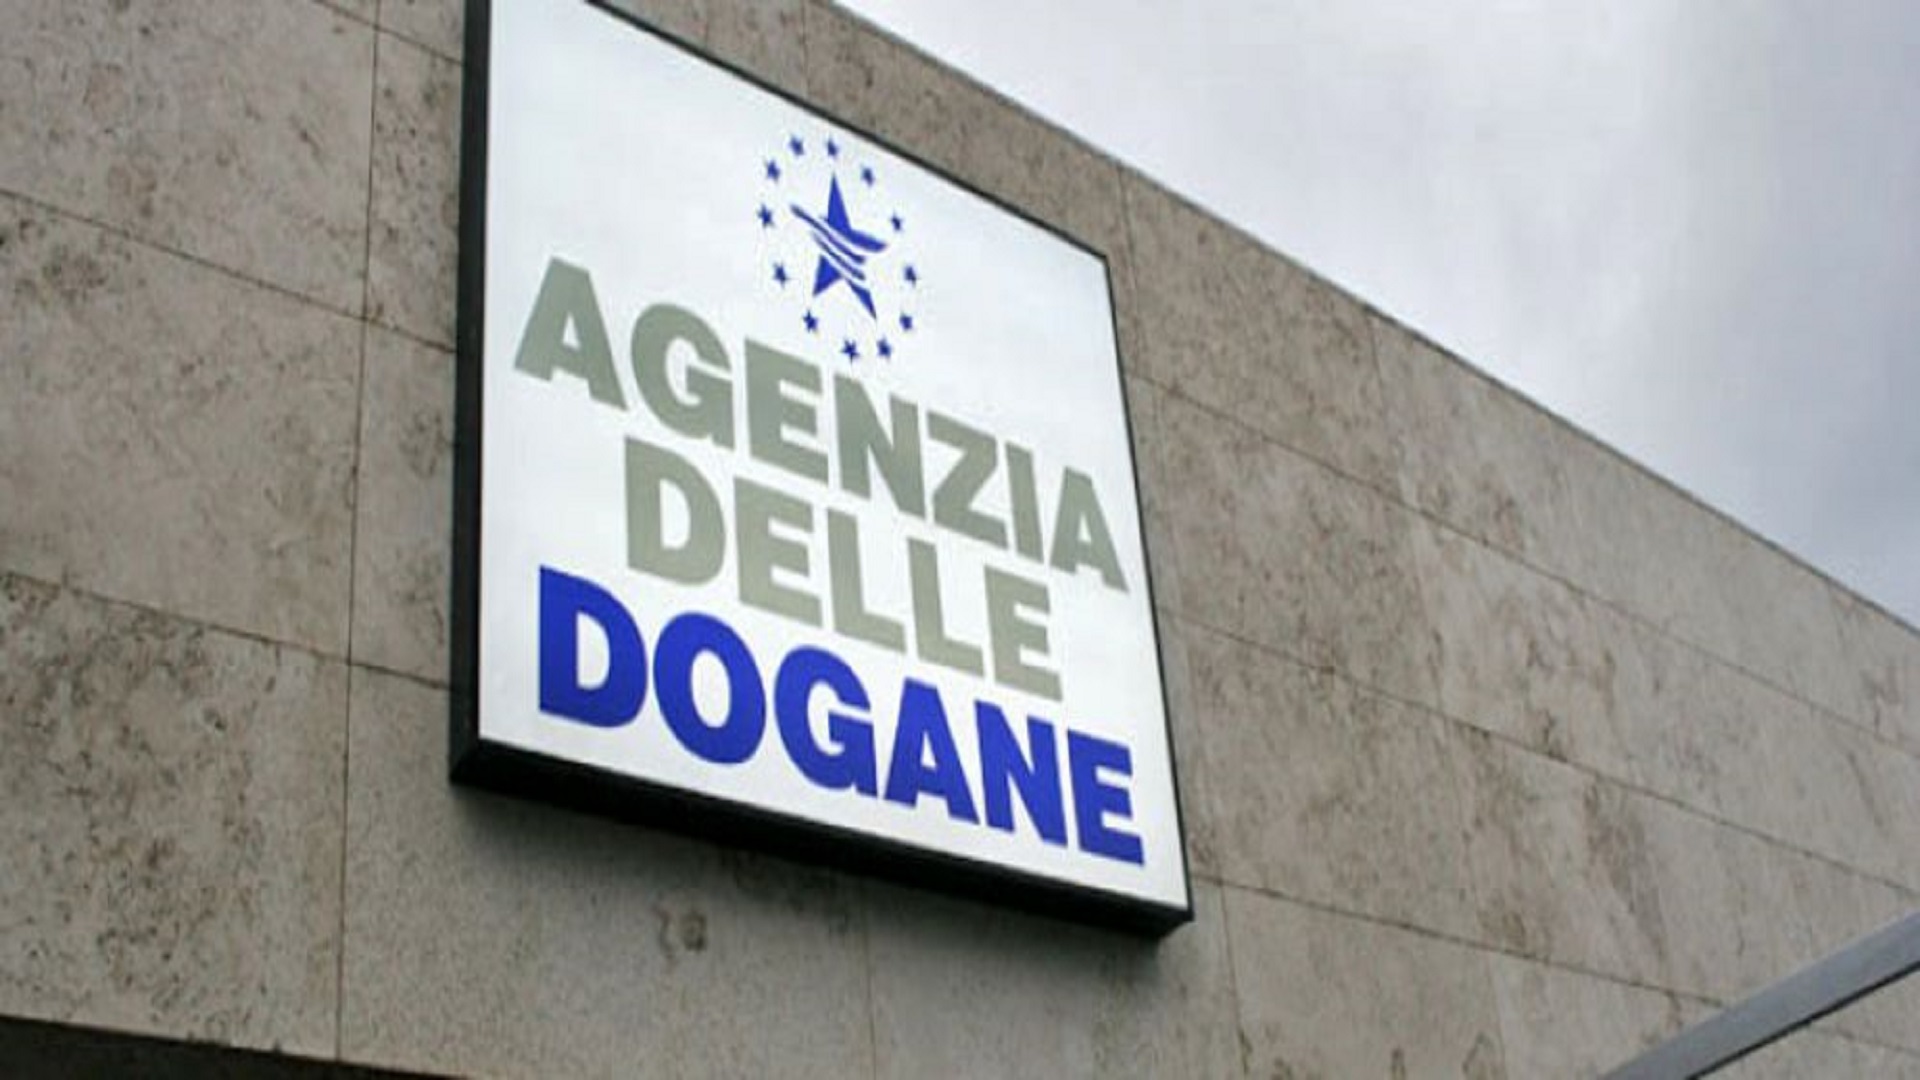 Agenzia delle Dogane 001 1920x1080 v2